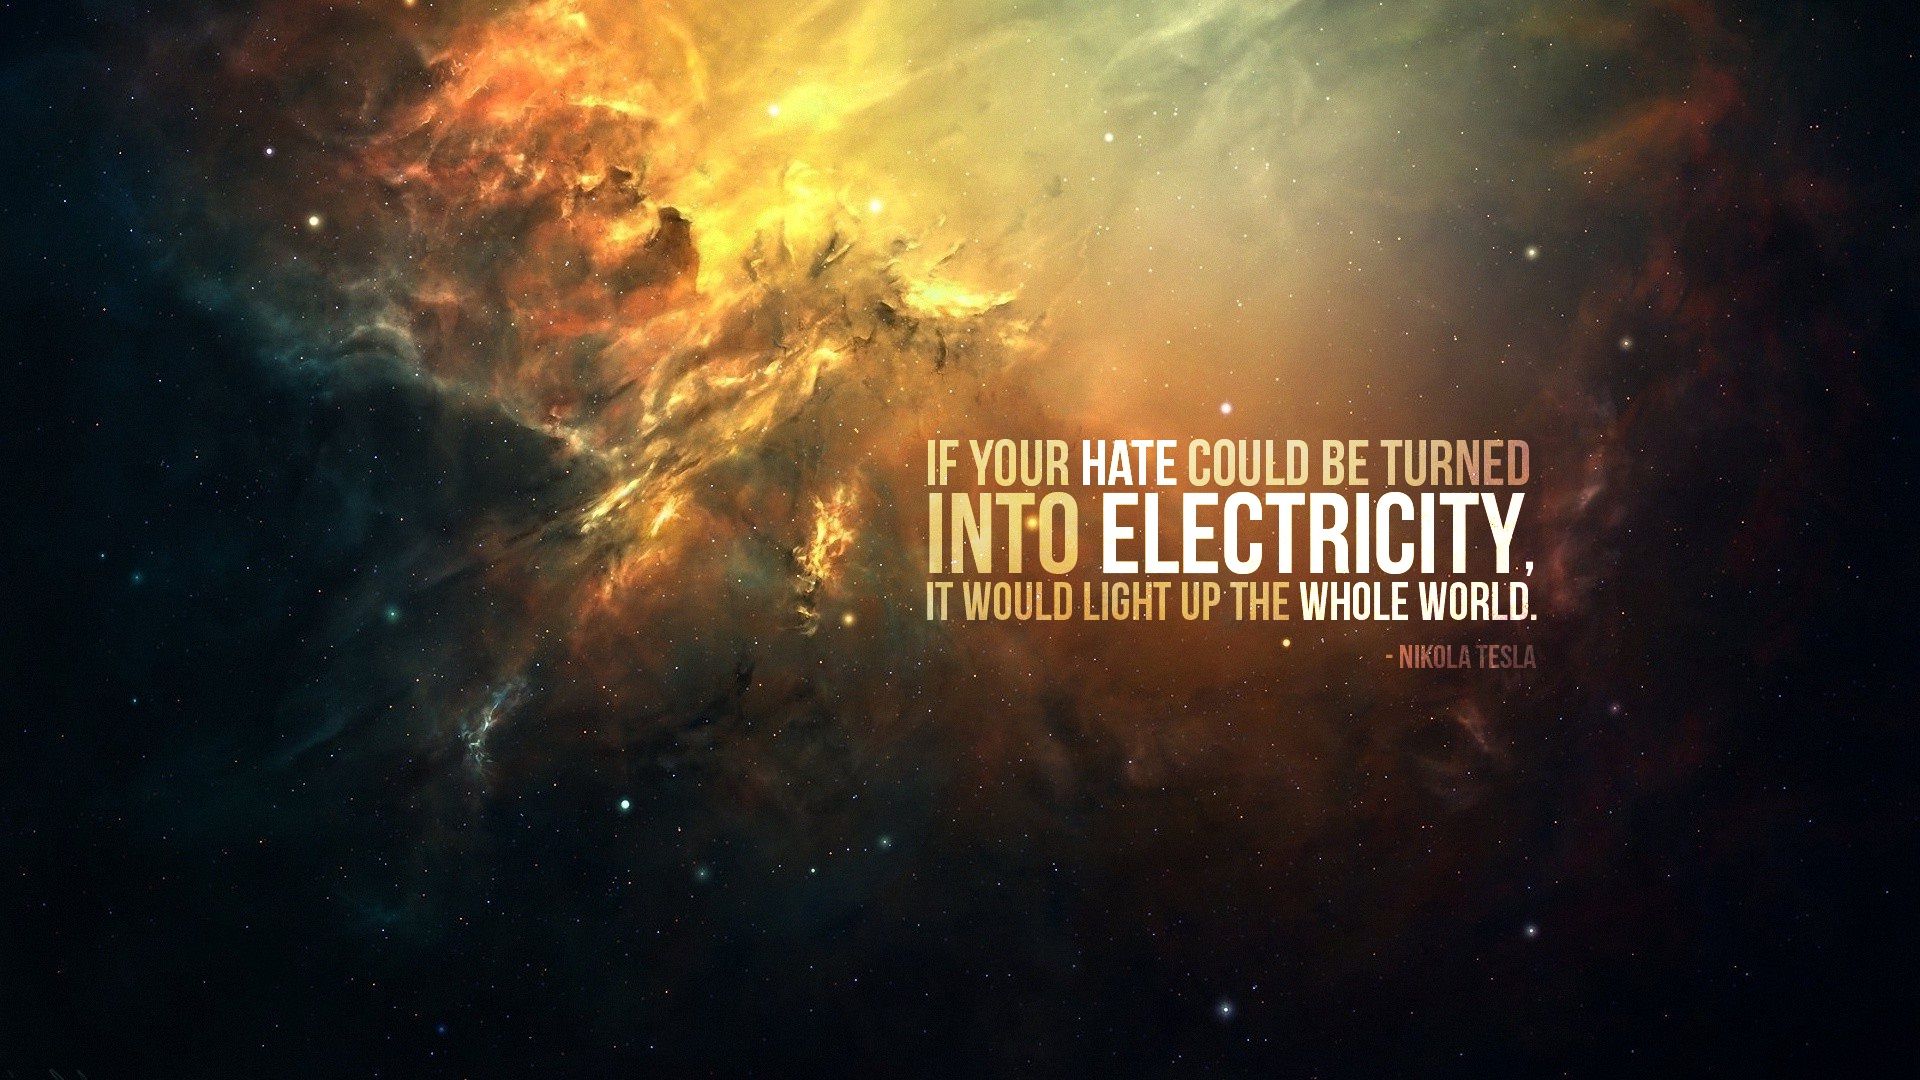 Nikola Tesla Quote HD Wallpaper | 1920x1080 | ID:51863